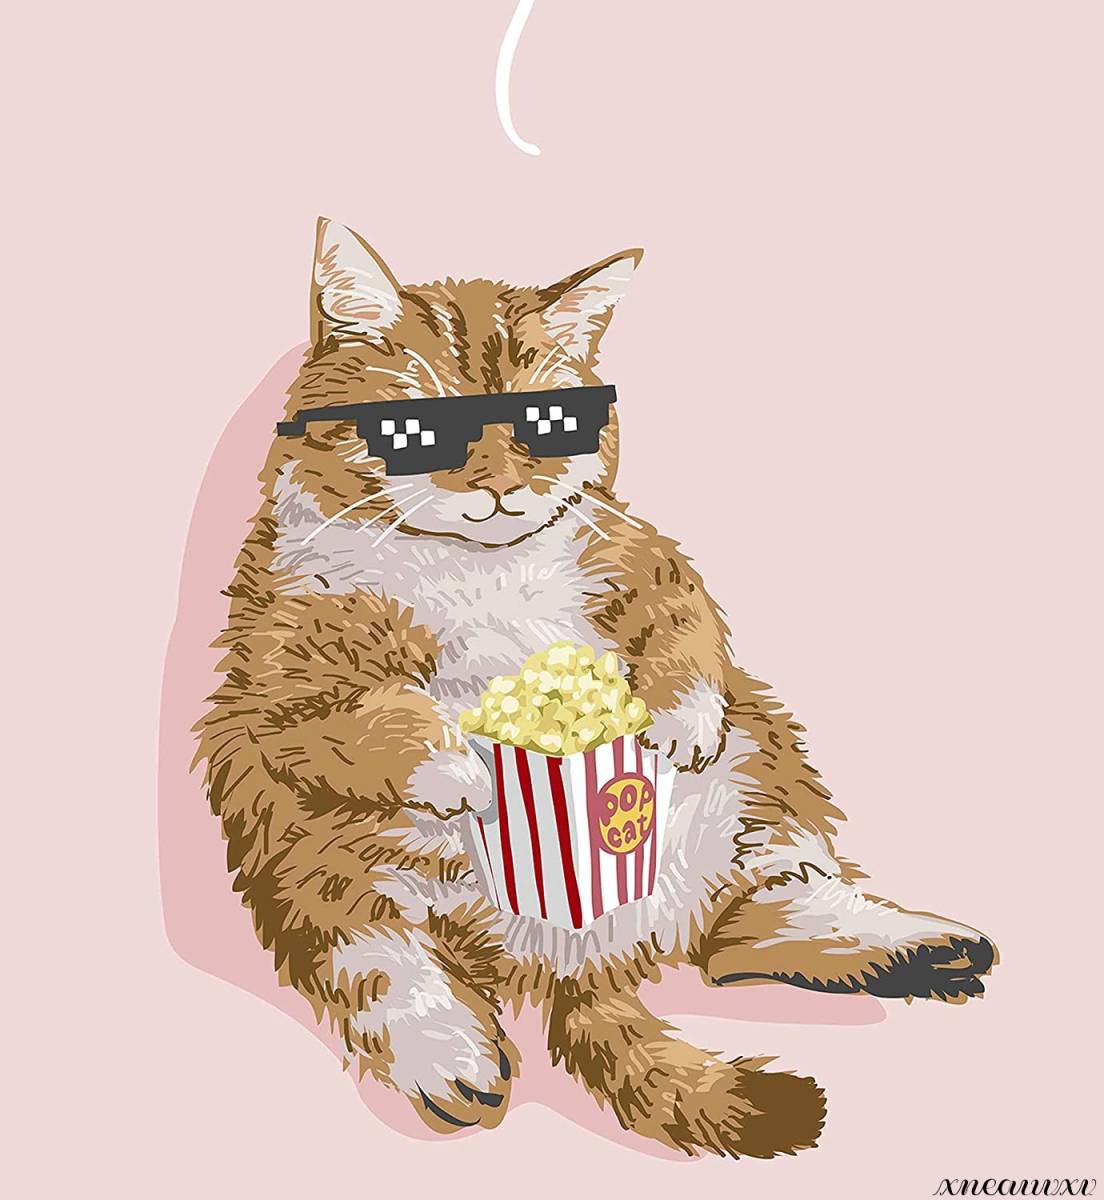 차가운 고양이 아트 포스터 인테리어 벽 교수형 방 장식 장식 그림 캔버스 회화 세련된 동물 고양이 동물 예술 감상 재 장식, 삽화, 그림, 파스텔 그림, 크레용 그리기